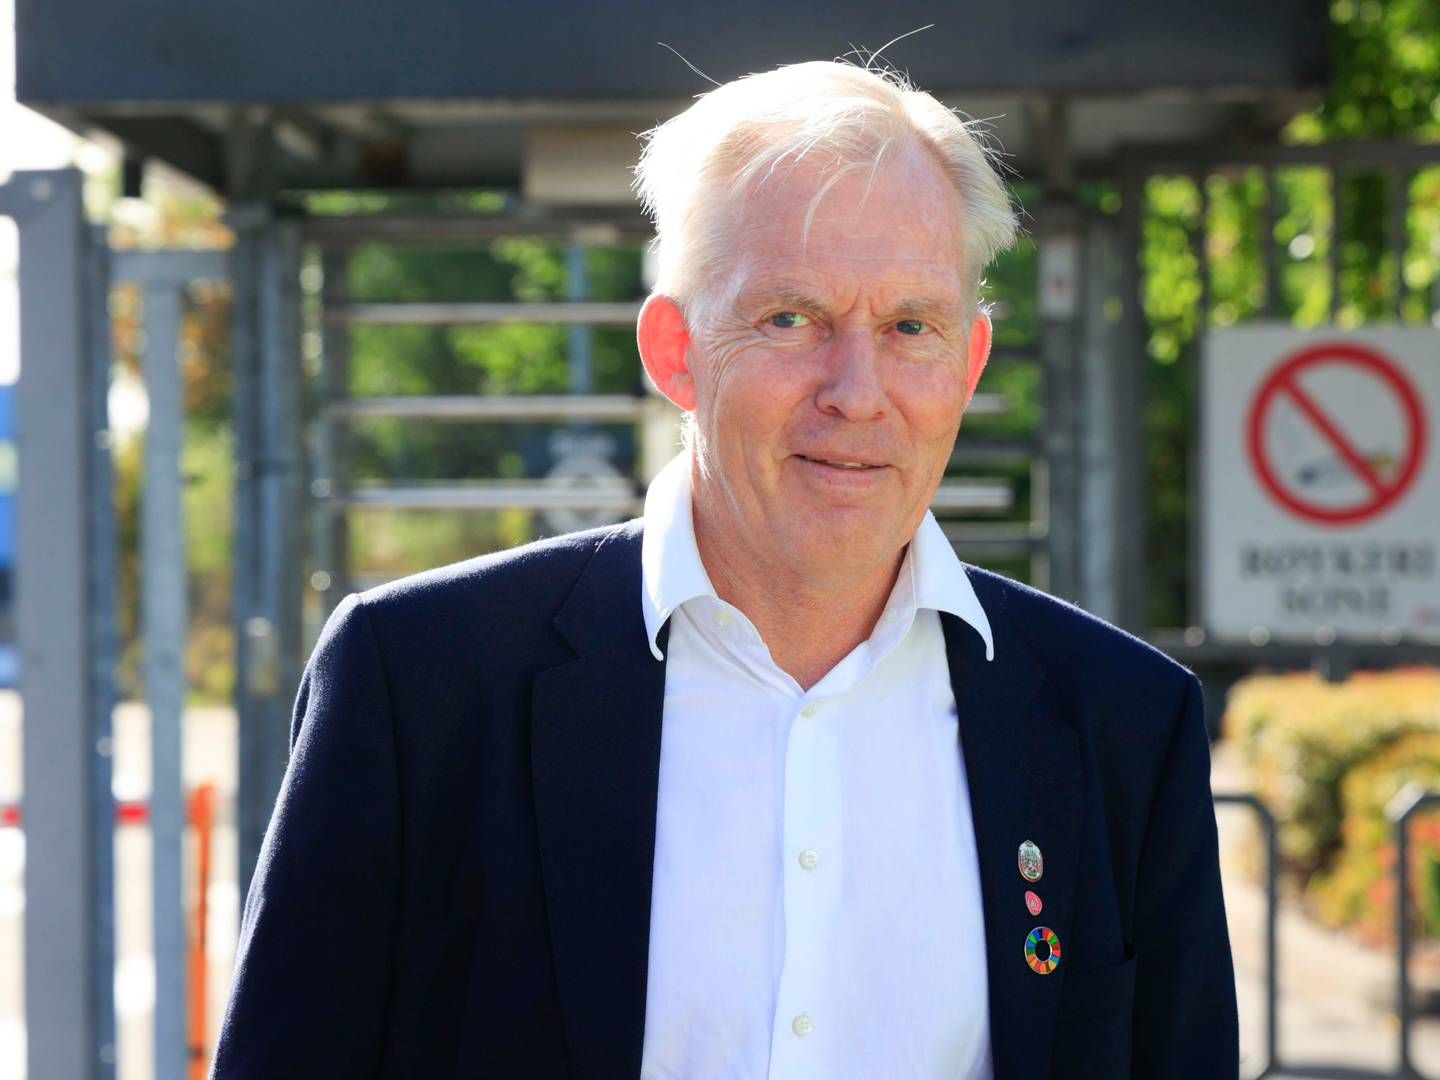 LEDER UTVALG: Jan Oddvar Skisland skal lede utvalget som skal gi råd om prioritering av tiltak for folkehelsen. | Foto: Tor Erik Schrøder / NTB